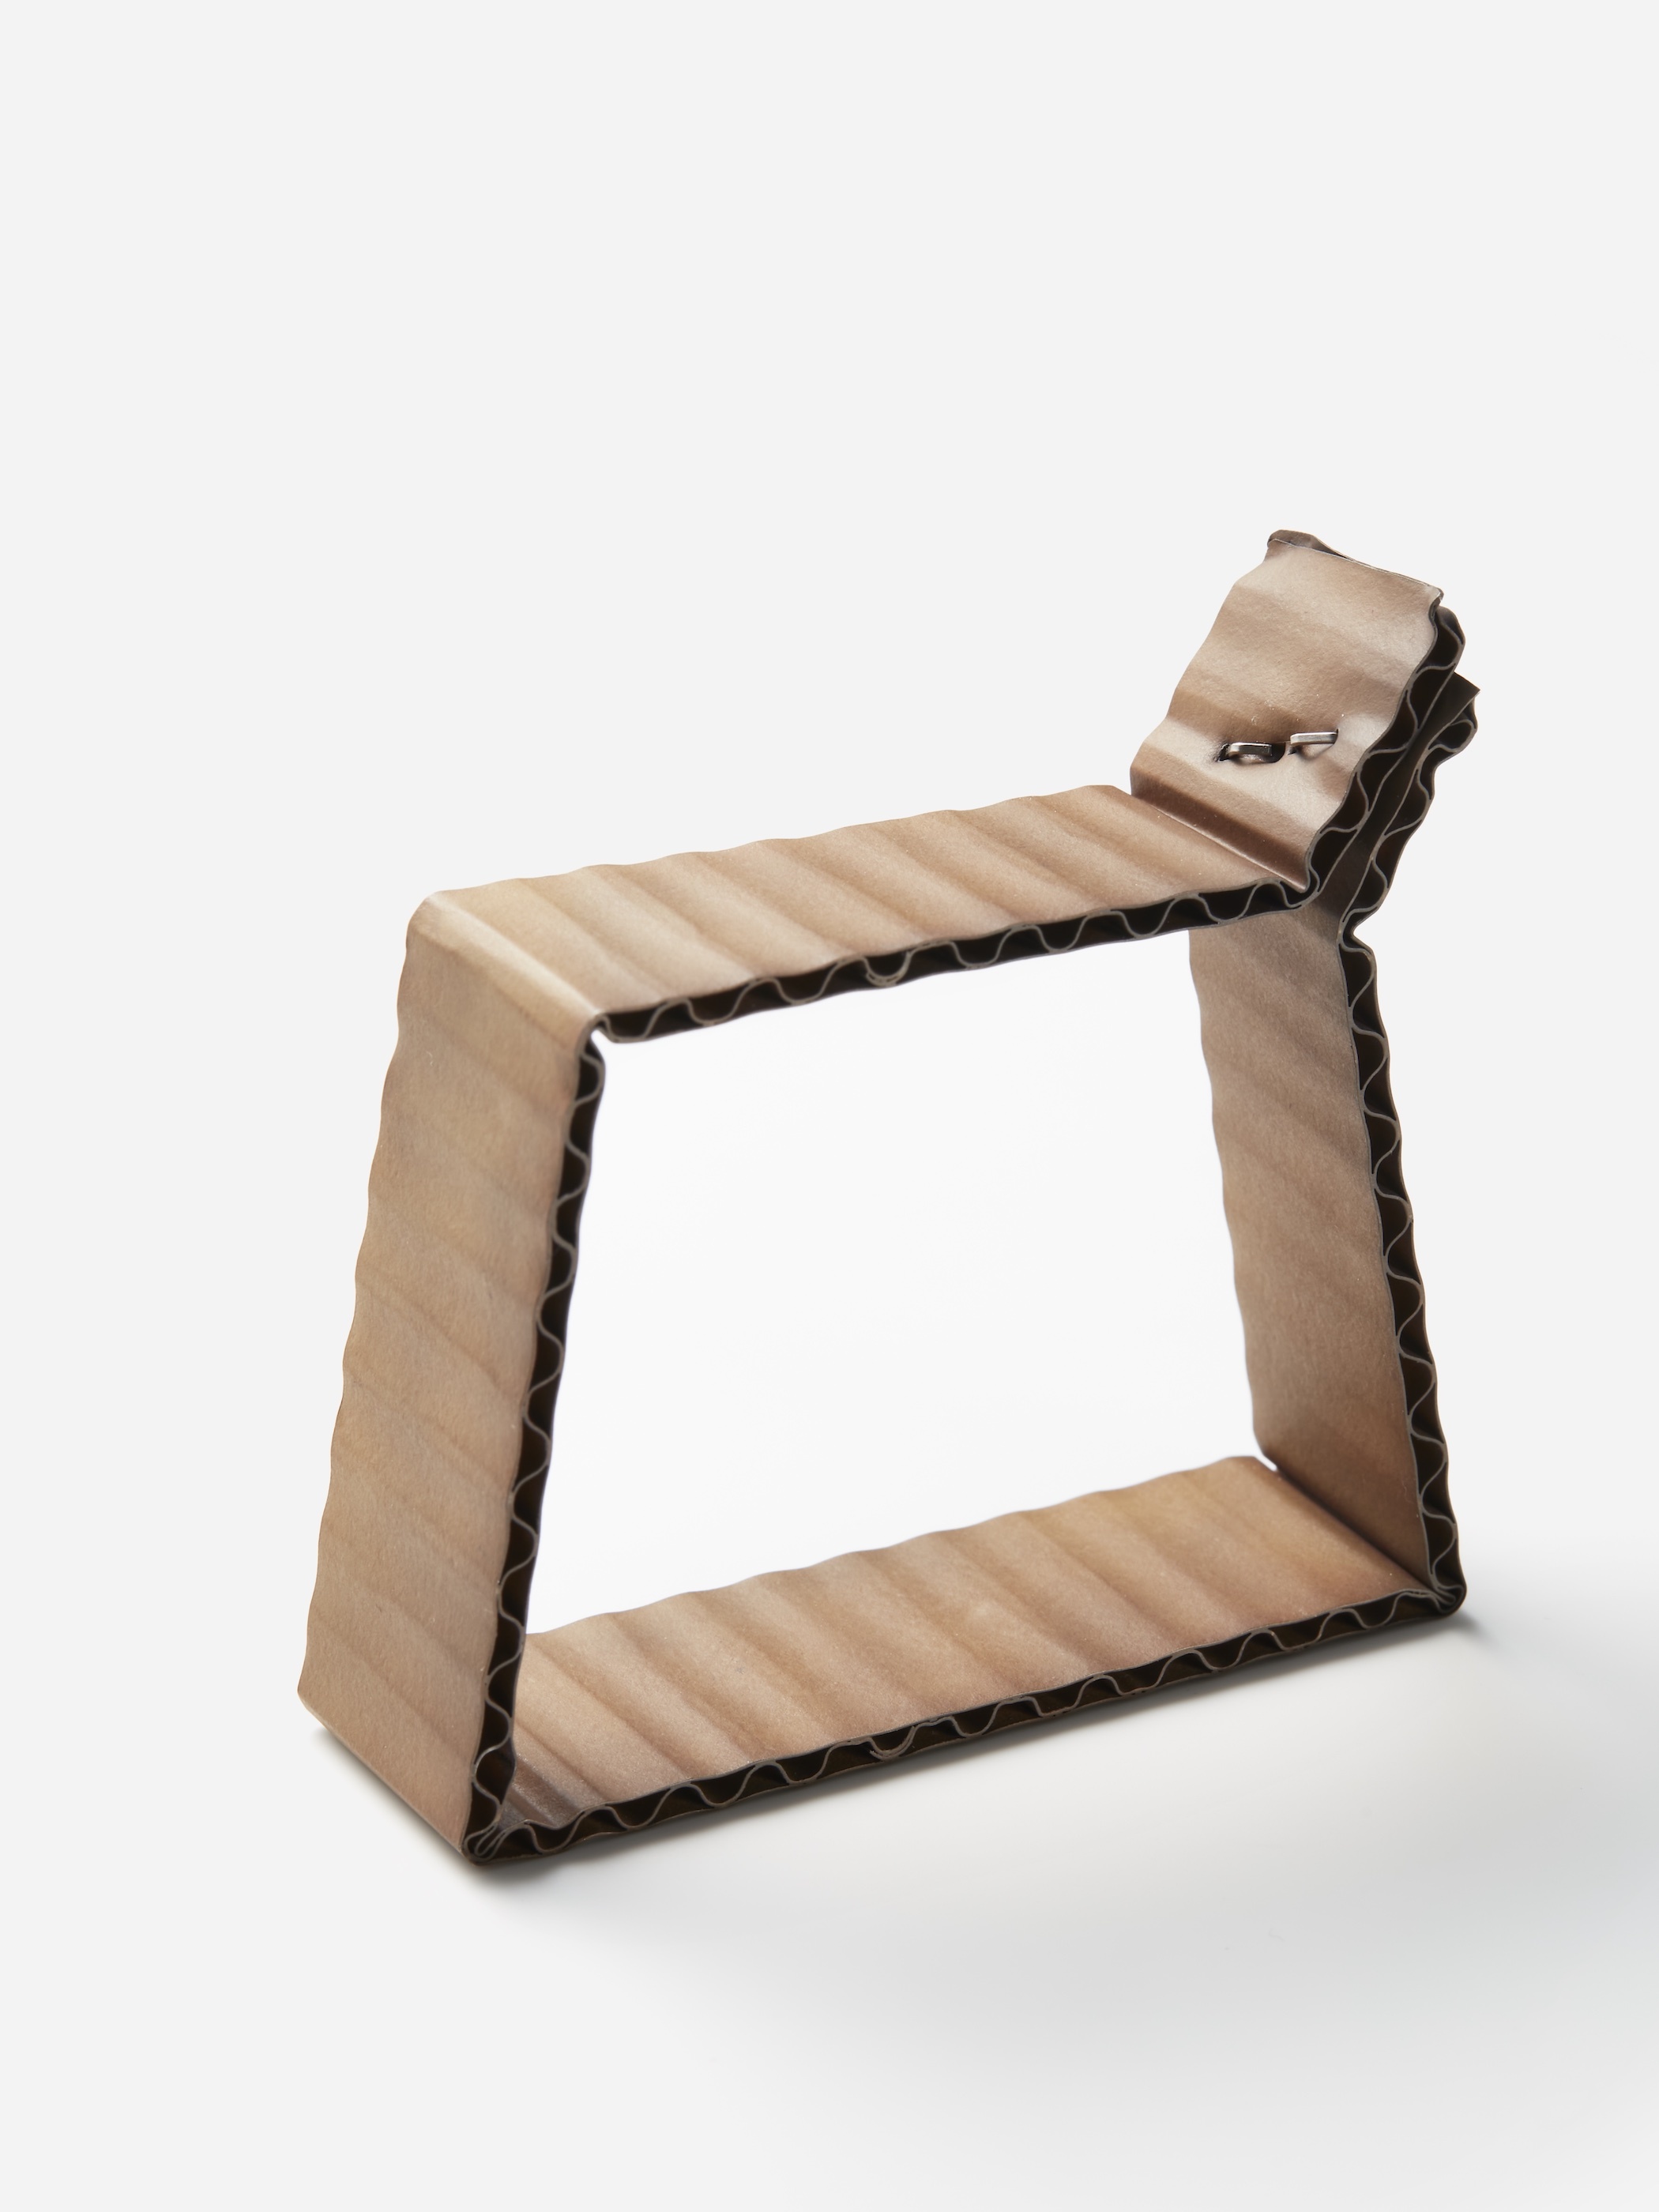 David Bielander / Cardboard bracelet square shape